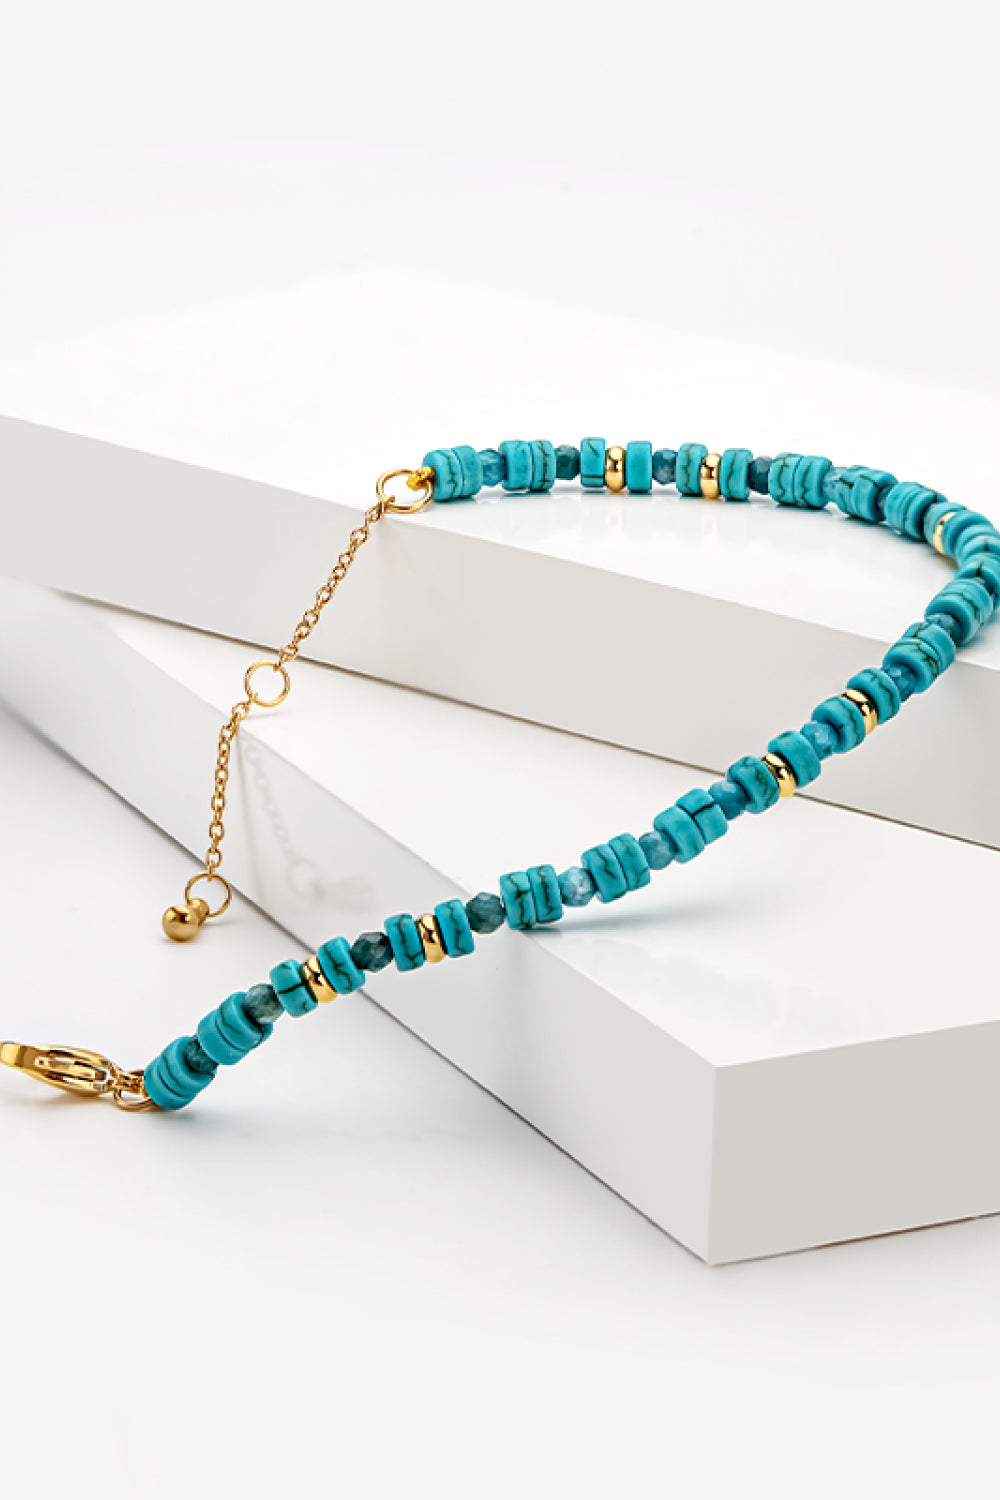 Turquoise Copper Bracelet - Green / One Size - Women’s Jewelry - Bracelets - 3 - 2024